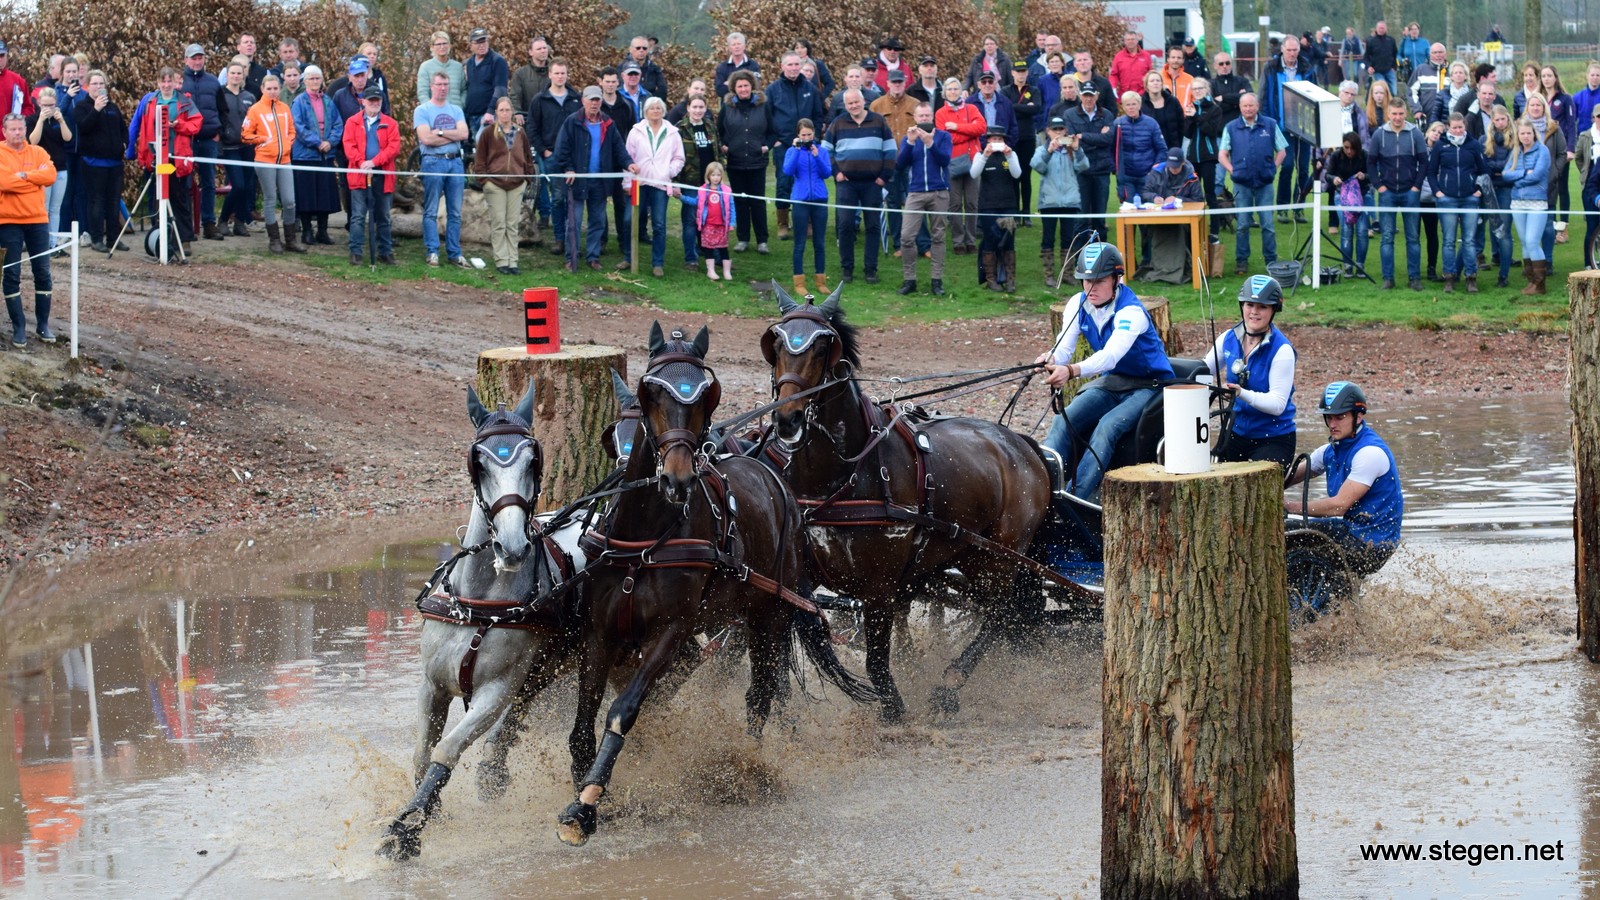 menwedstrijd Exloo. Bram Chardon won met zijn vierspan paarden met grote voorsprong de internationale menwedstrijd in Exloo.